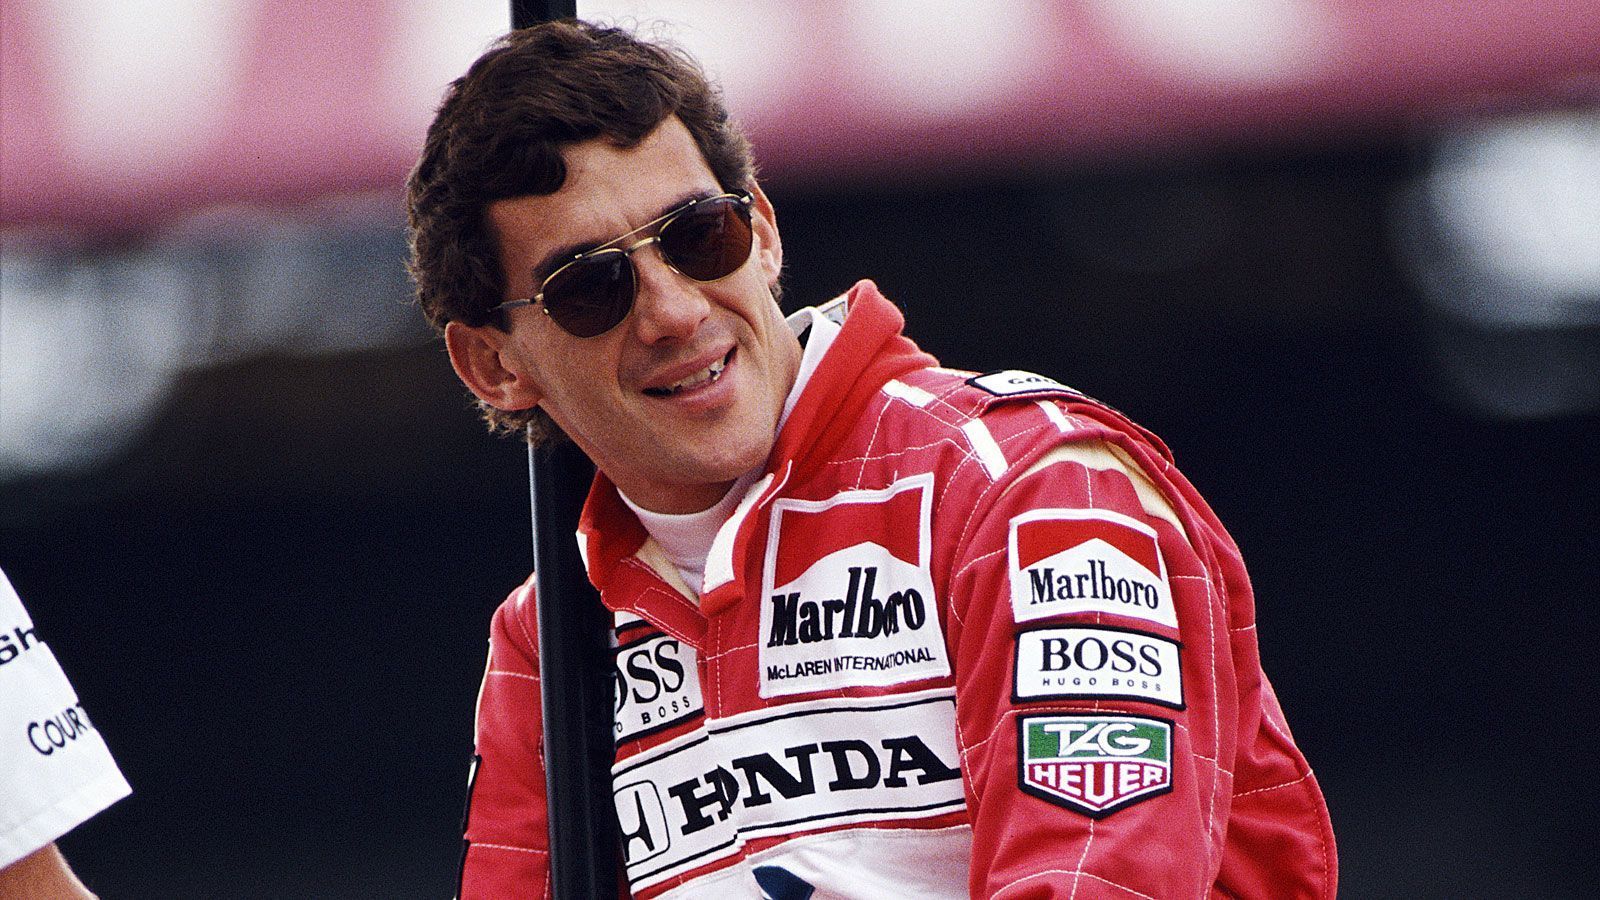 
                <strong>Formel 1</strong><br>
                Der Rennsport hatte in diesem Jahr aber auch viel zu betrauern. Mit Ayrton Senna verunglückte einer der größten Rennfahrer aller Zeiten tödlich beim Grand Prix von San Marino. Der dreimalige Weltmeister wurde nur 33 Jahre alt. 
              